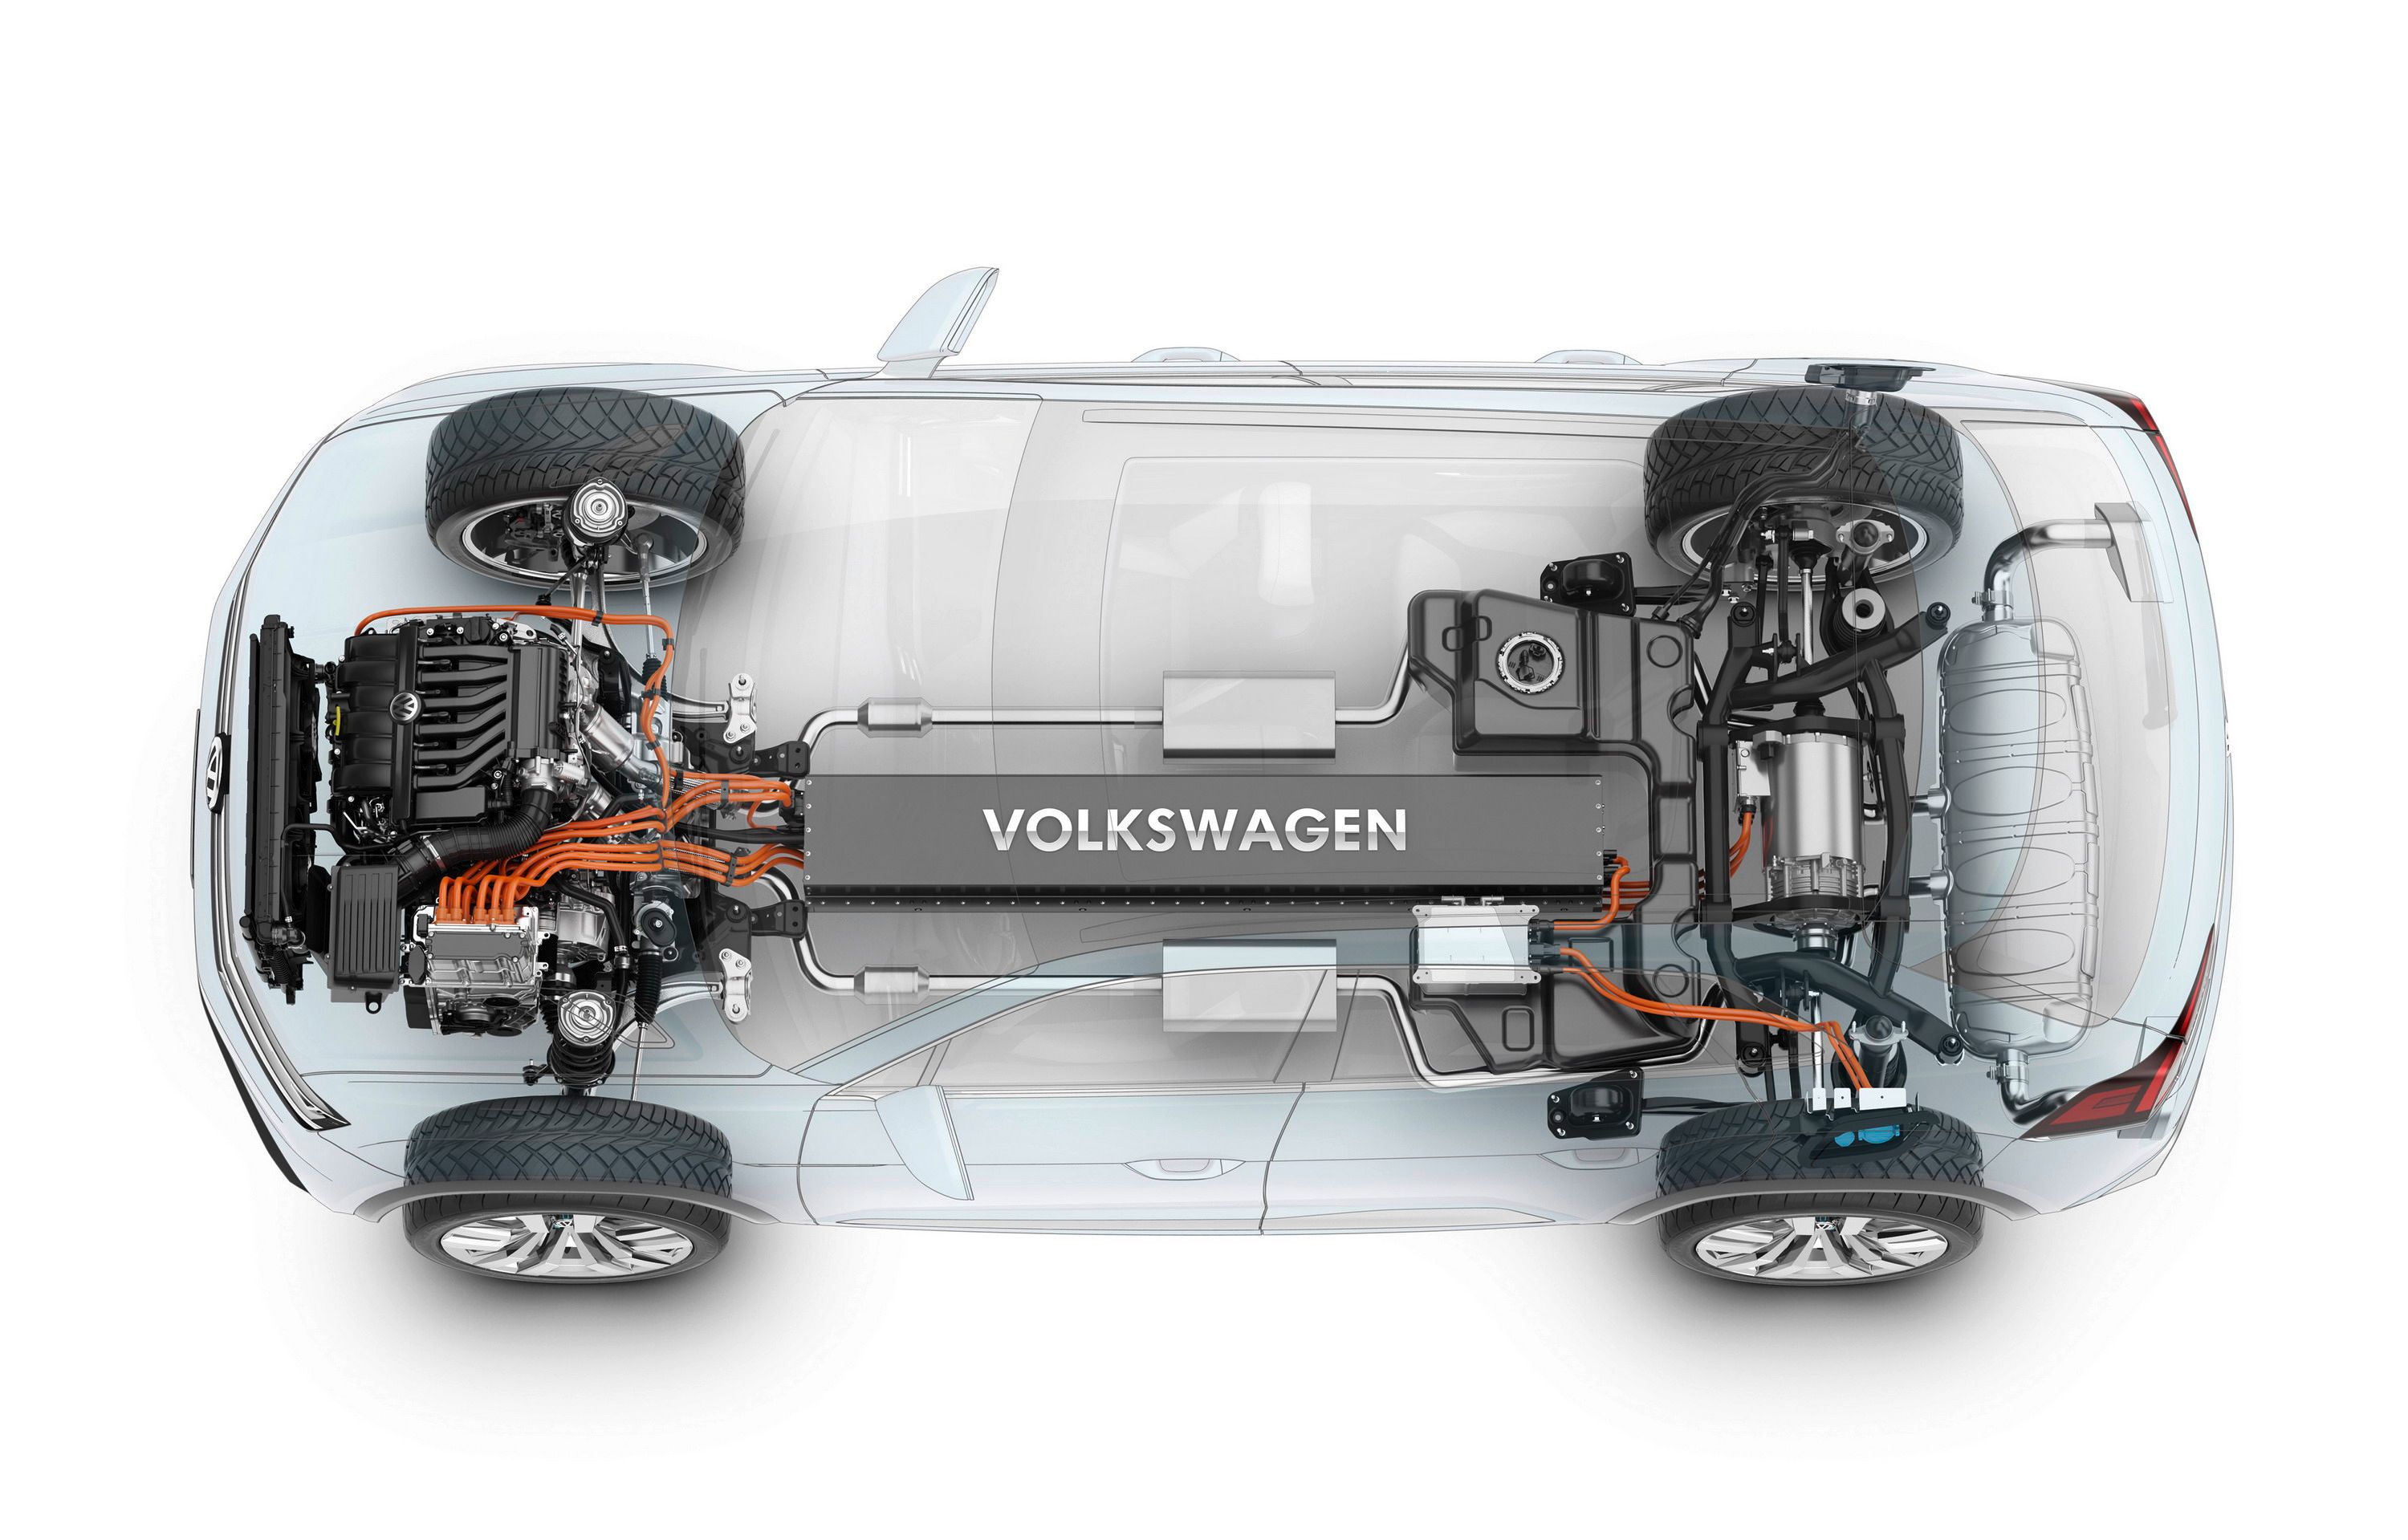 2015 Volkswagen Cross Coupe GTE